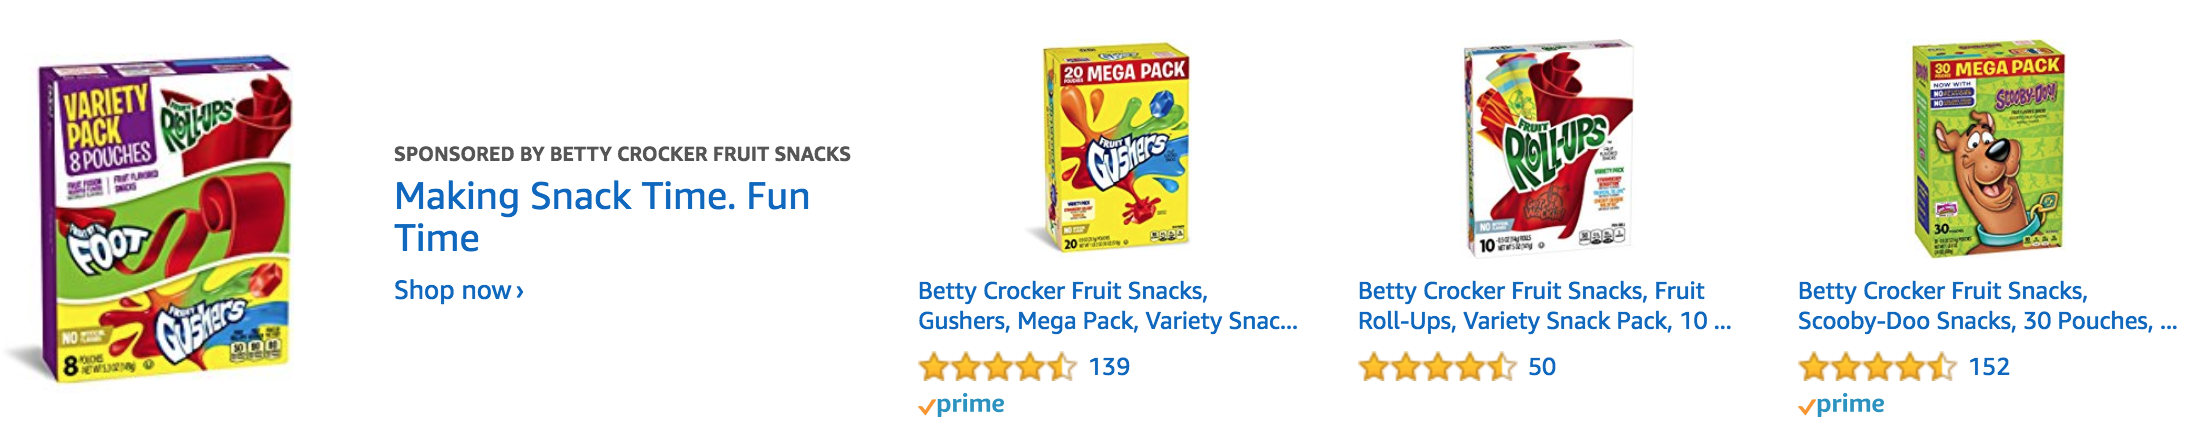 betty crocker fruit snacks